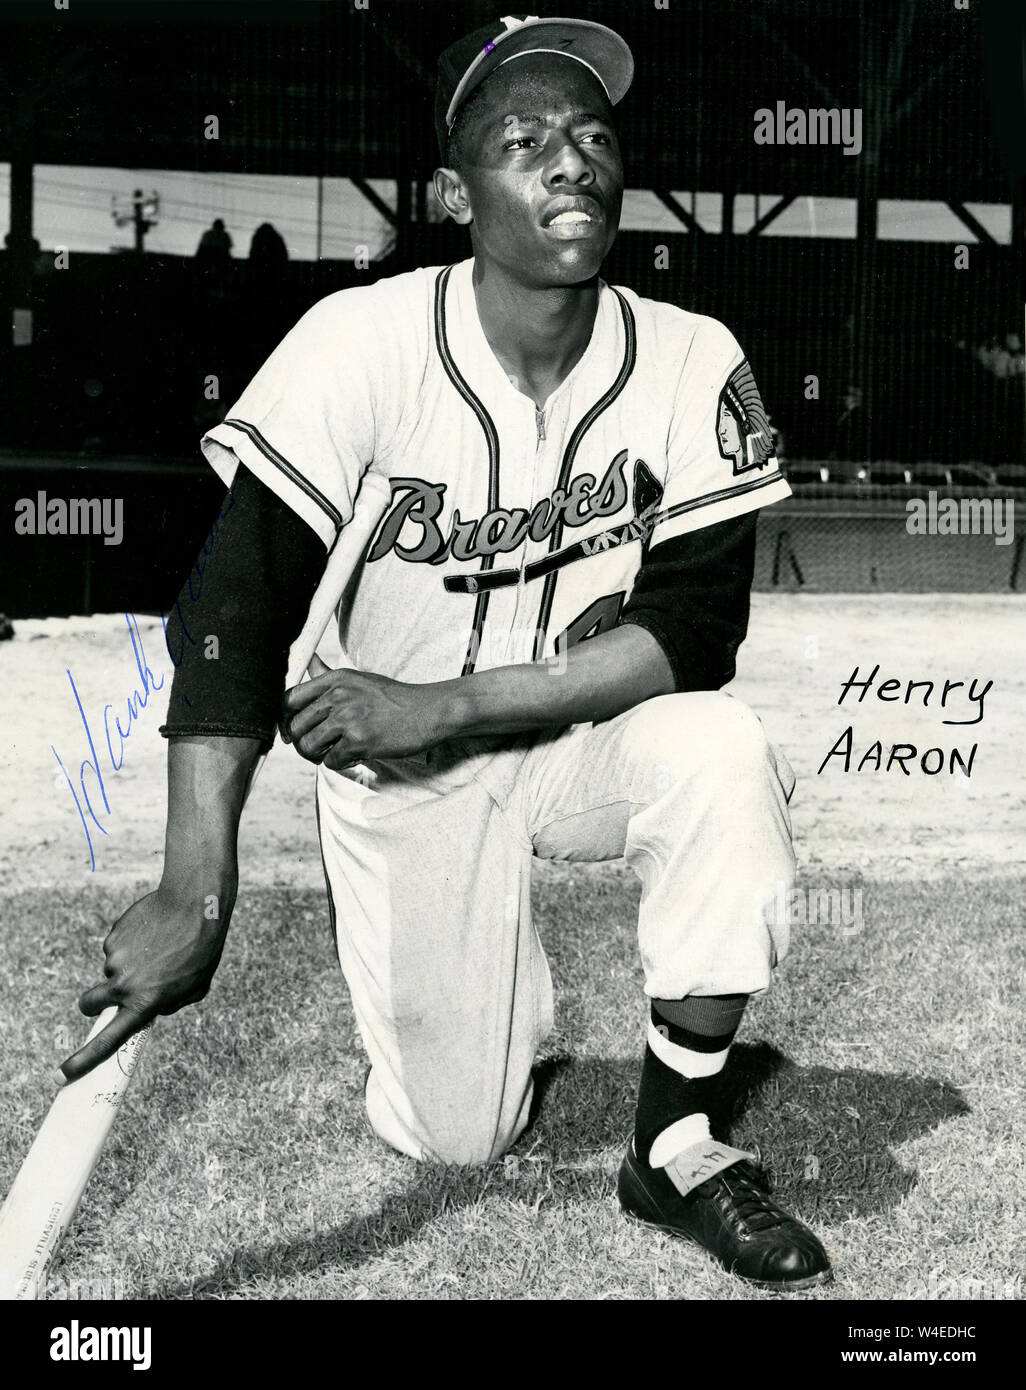 Hall of Fame giocatore di baseball Hank Aaron con il Milwaukee Braves negli anni cinquanta e sessanta. Foto Stock